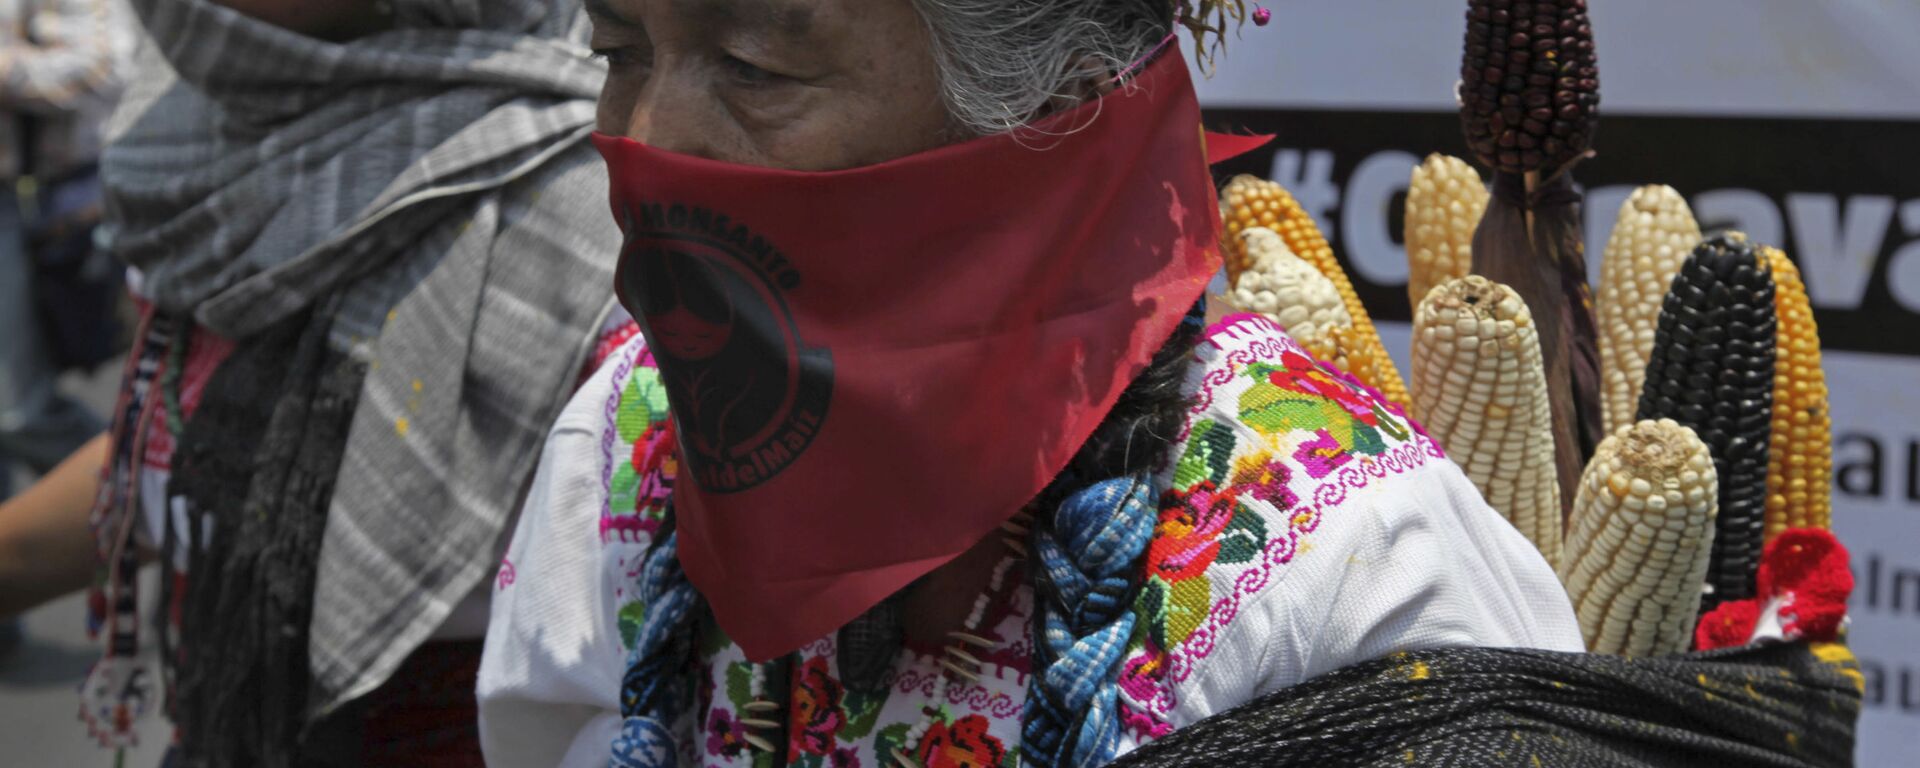 Mujer rural mexicana durante la protesta contra Monsanto - Sputnik Mundo, 1920, 31.10.2020